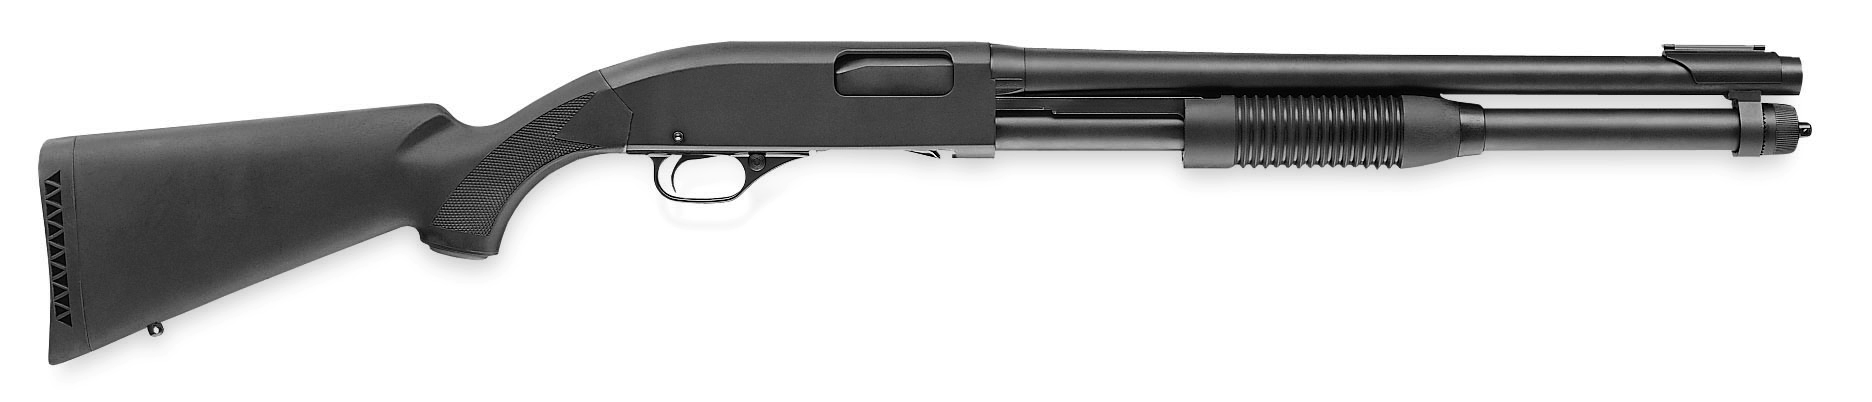 Model 1300 Defender 8-Shot